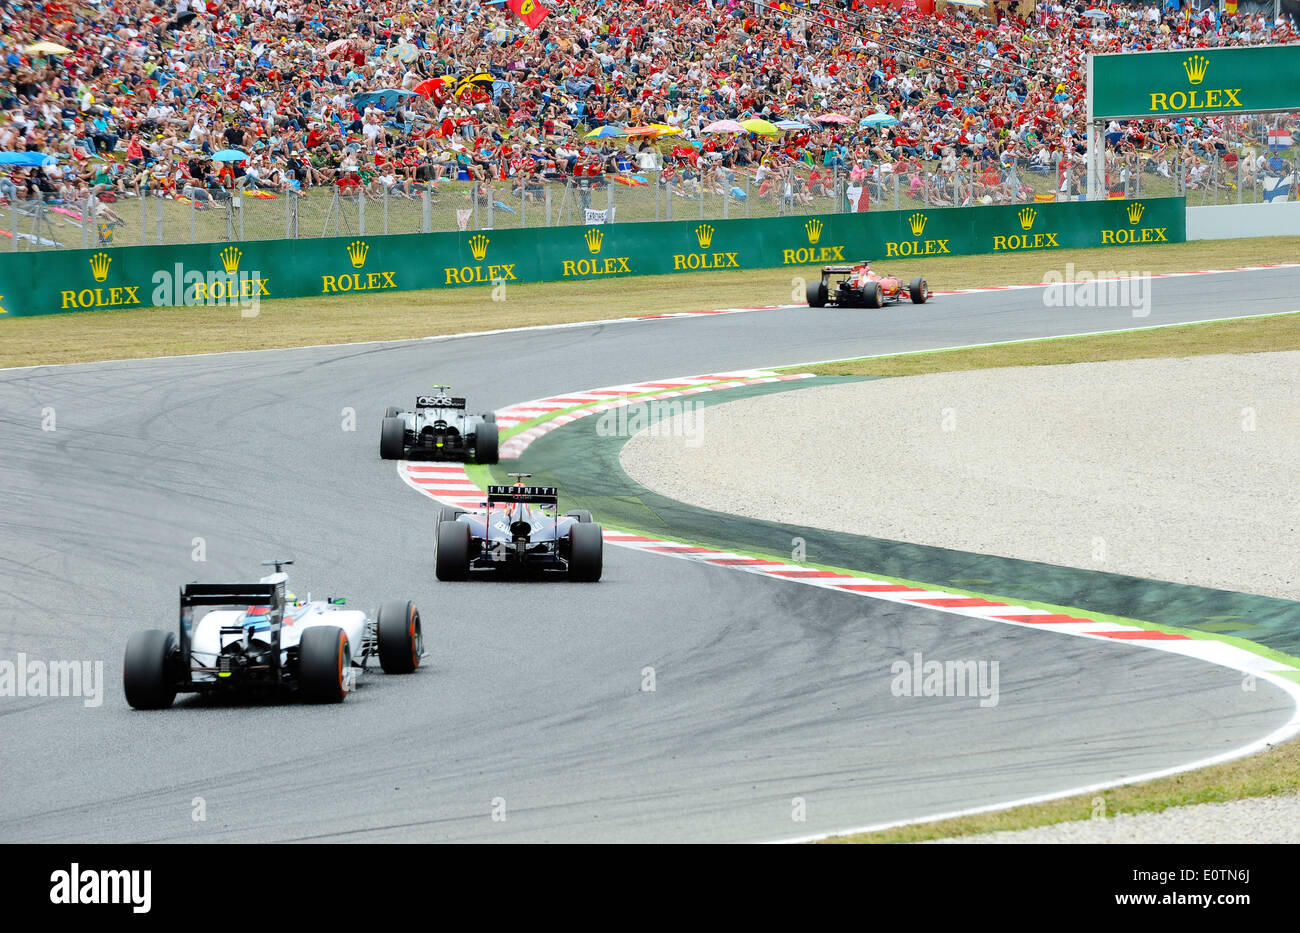 Grand Prix de Fórmula Uno de España 2014 ---- coches de carreras en la curva delante de espectadores Foto de stock